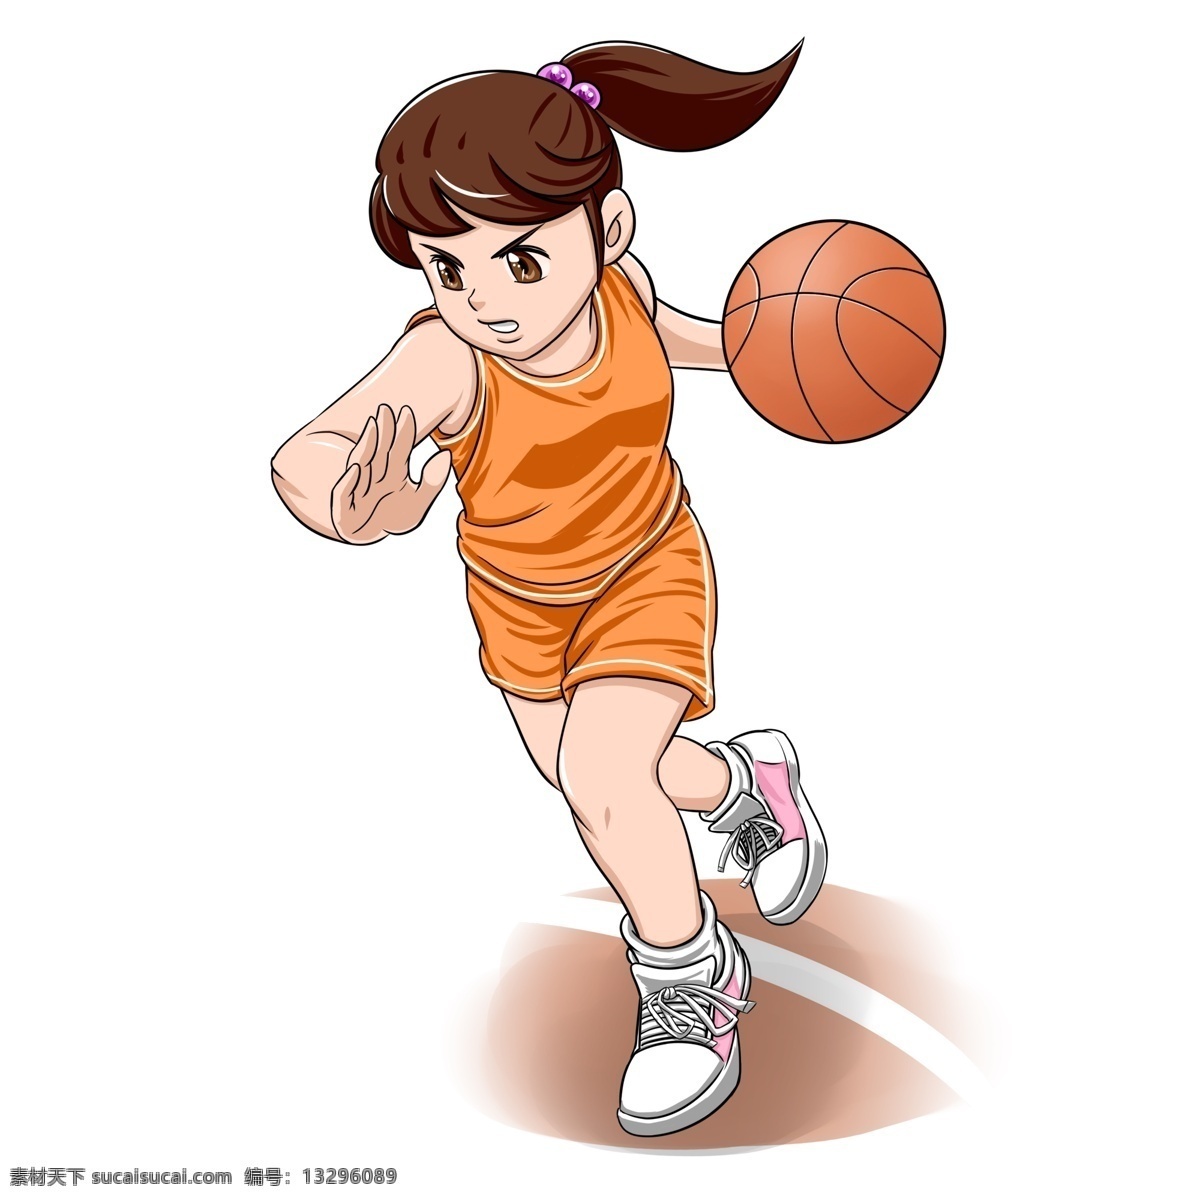 可爱 小学生 运动 卡通 形象 篮球 女孩 运动装 商用